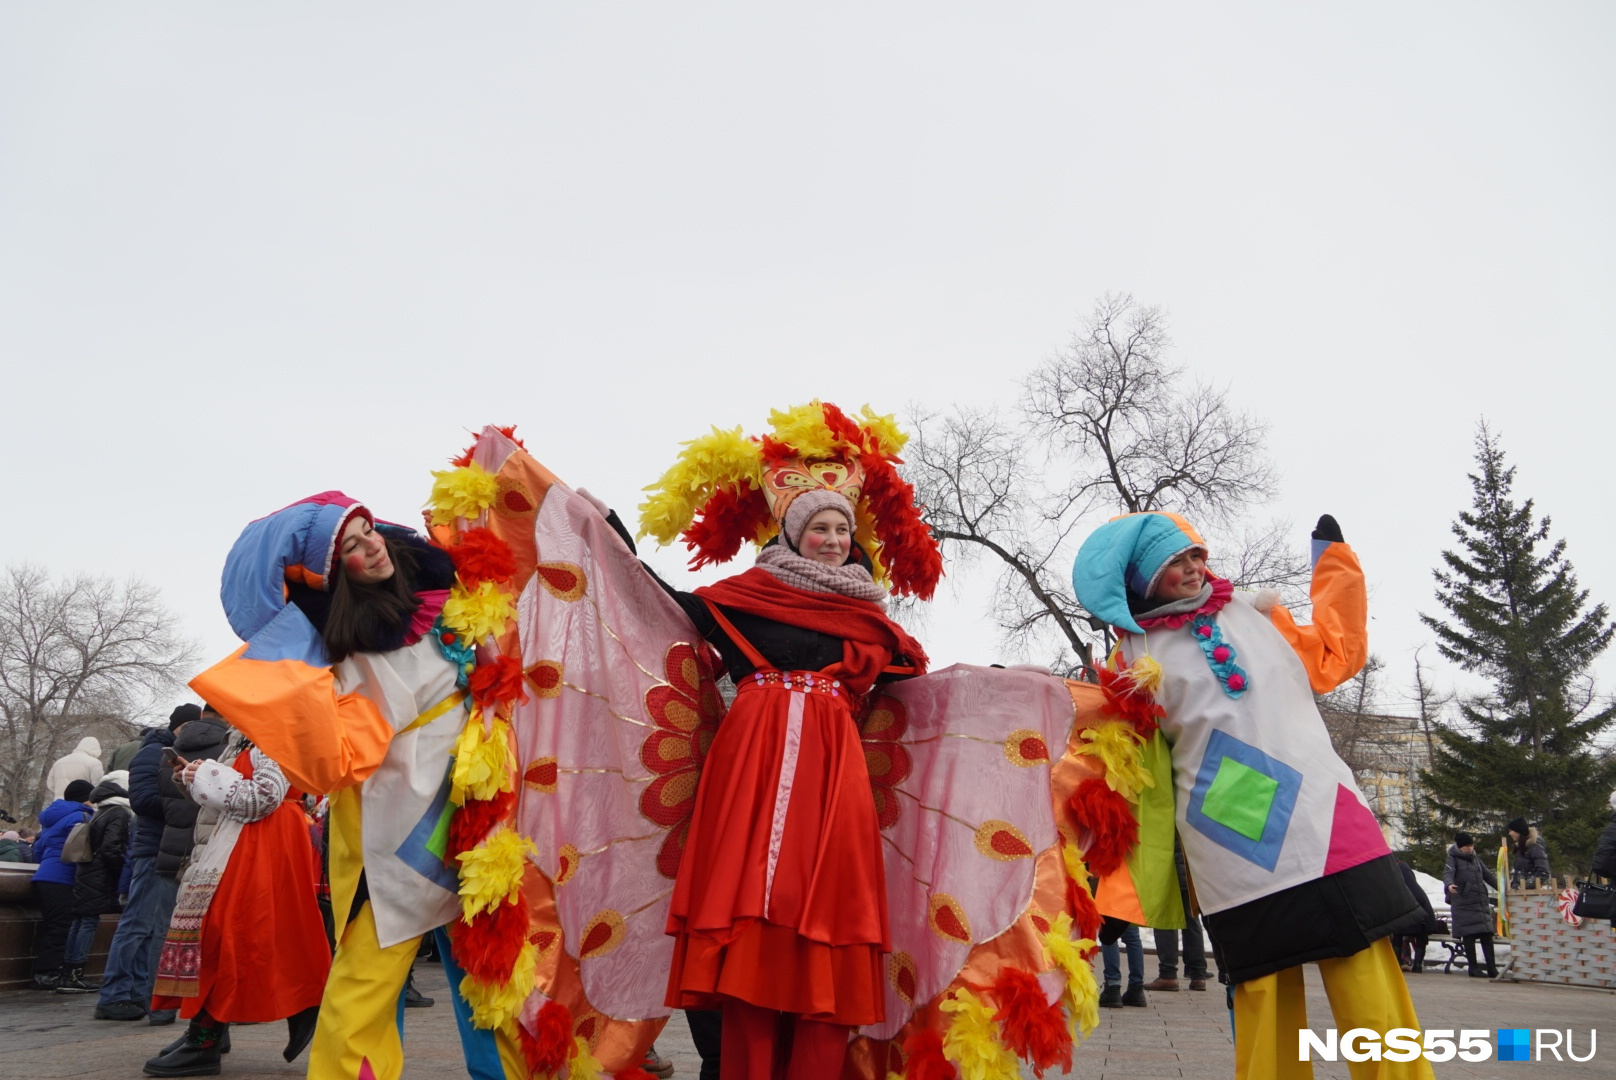 Главные народные гулянья на Масленицу пройдут на площади Ленина в Чите